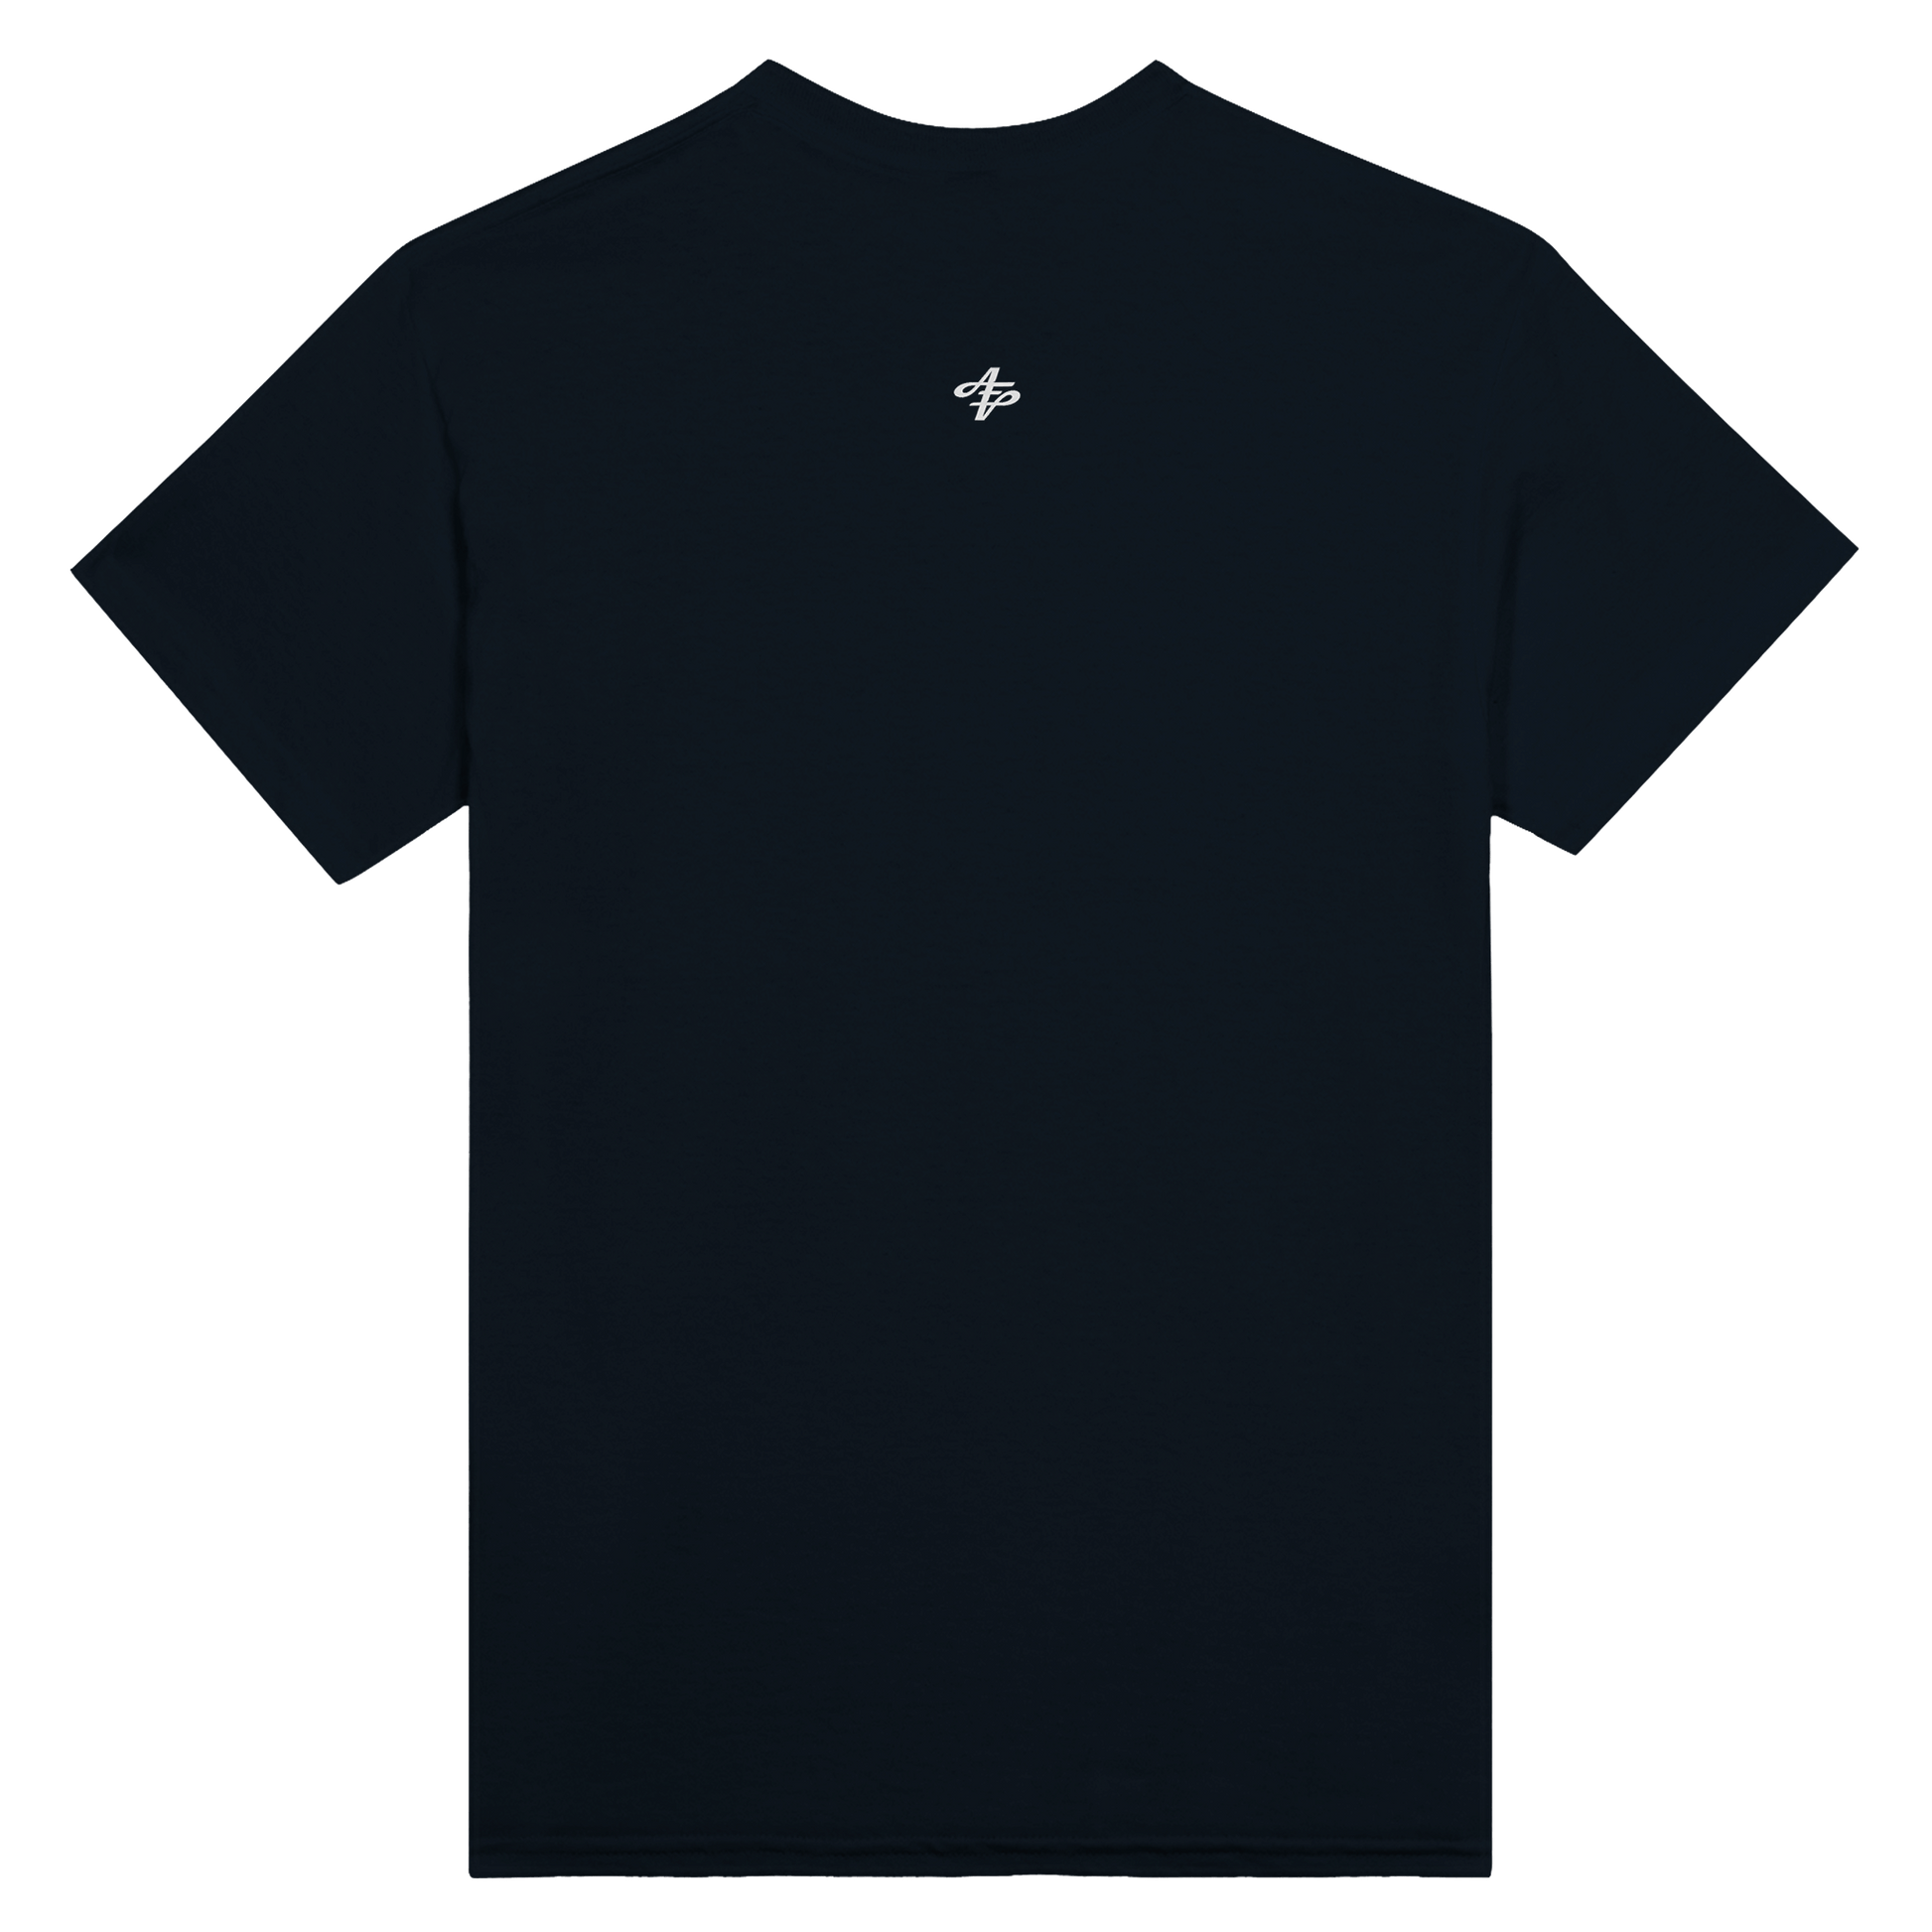 L.O.V.E - Heavyweight Unisex Crewneck T-shirt apparel